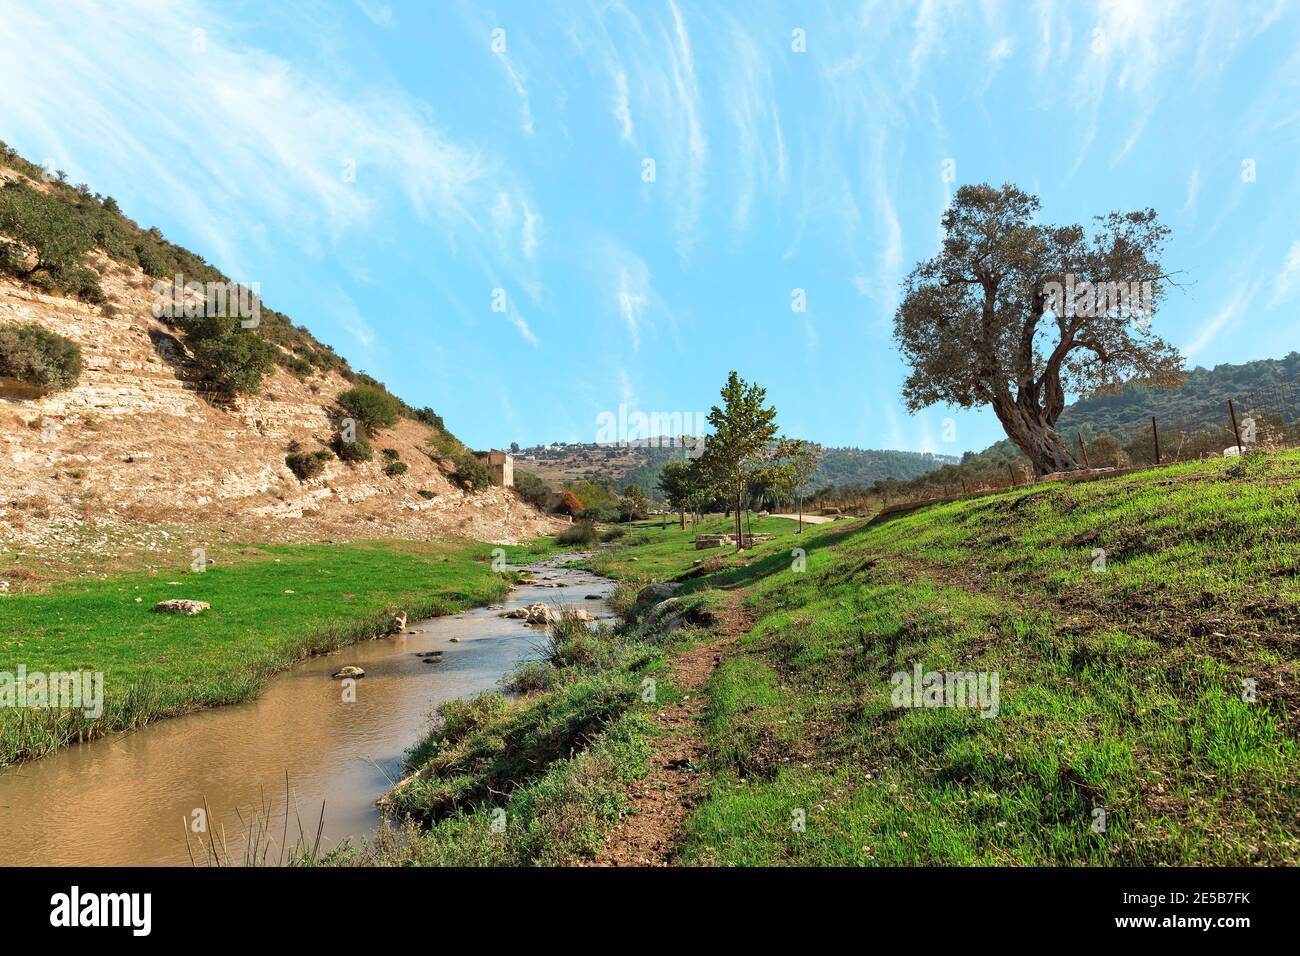 sentier de randonnée le long de la rivière sur le fond d'un Beau ciel en Israël Banque D'Images